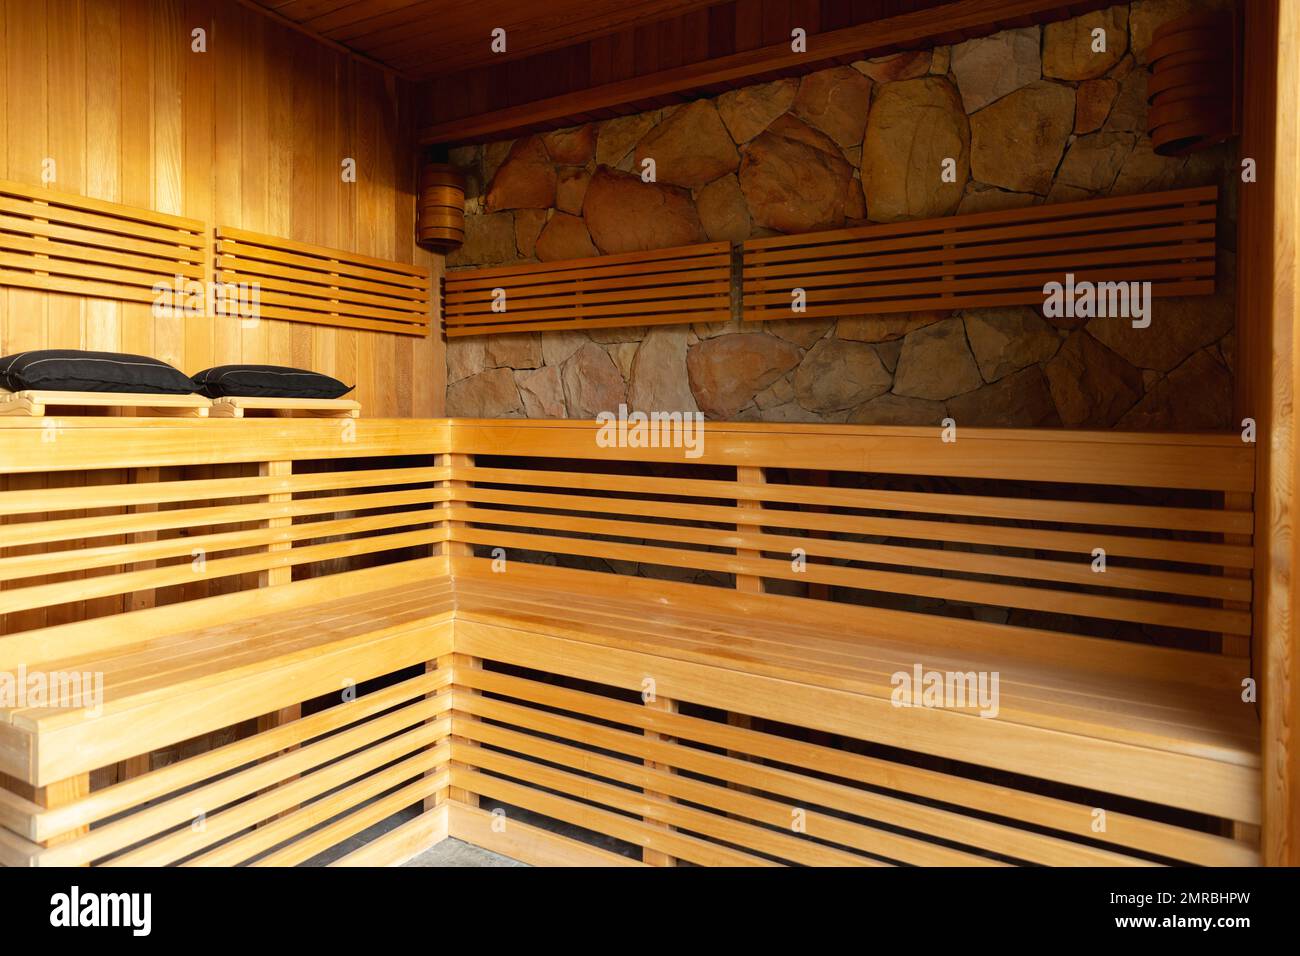 Bancos de madera en la sala de sauna en el spa de salud, espacio de copia Foto de stock